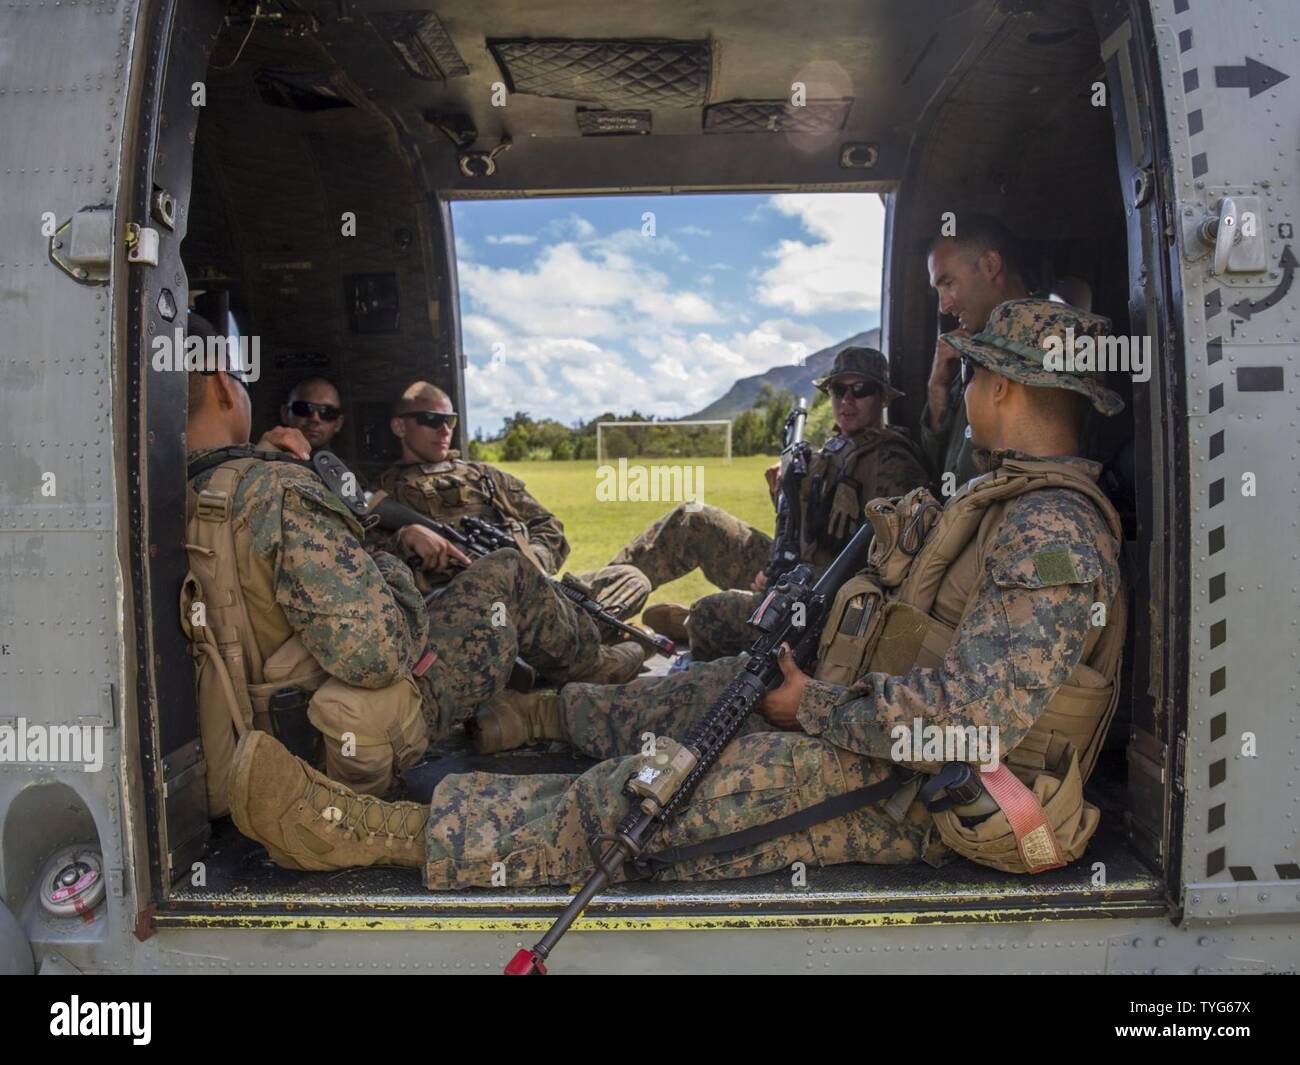 Les Marines américains avec Peloton de Génie de Combat, Groupe de travail Koa Moana 16-4, s'asseoir dans une armée de l'air en hélicoptère Hélicoptère de prune, de Nouvelle Calédonie, le 7 novembre 2016. Croix du Sud est un multi-national, l'aide humanitaire et secours en cas de catastrophe l'opération d'évacuation des non-combattants, mené tous les deux ans pour préparer unies dans l'éventualité d'un cyclone dans le Pacifique Sud. L'exercice Moana Koa cherche à accroître les engagements entre Leader et les nations partenaires alliés dans le Pacifique avec un intérêt collectif dans des relations militaires. Banque D'Images